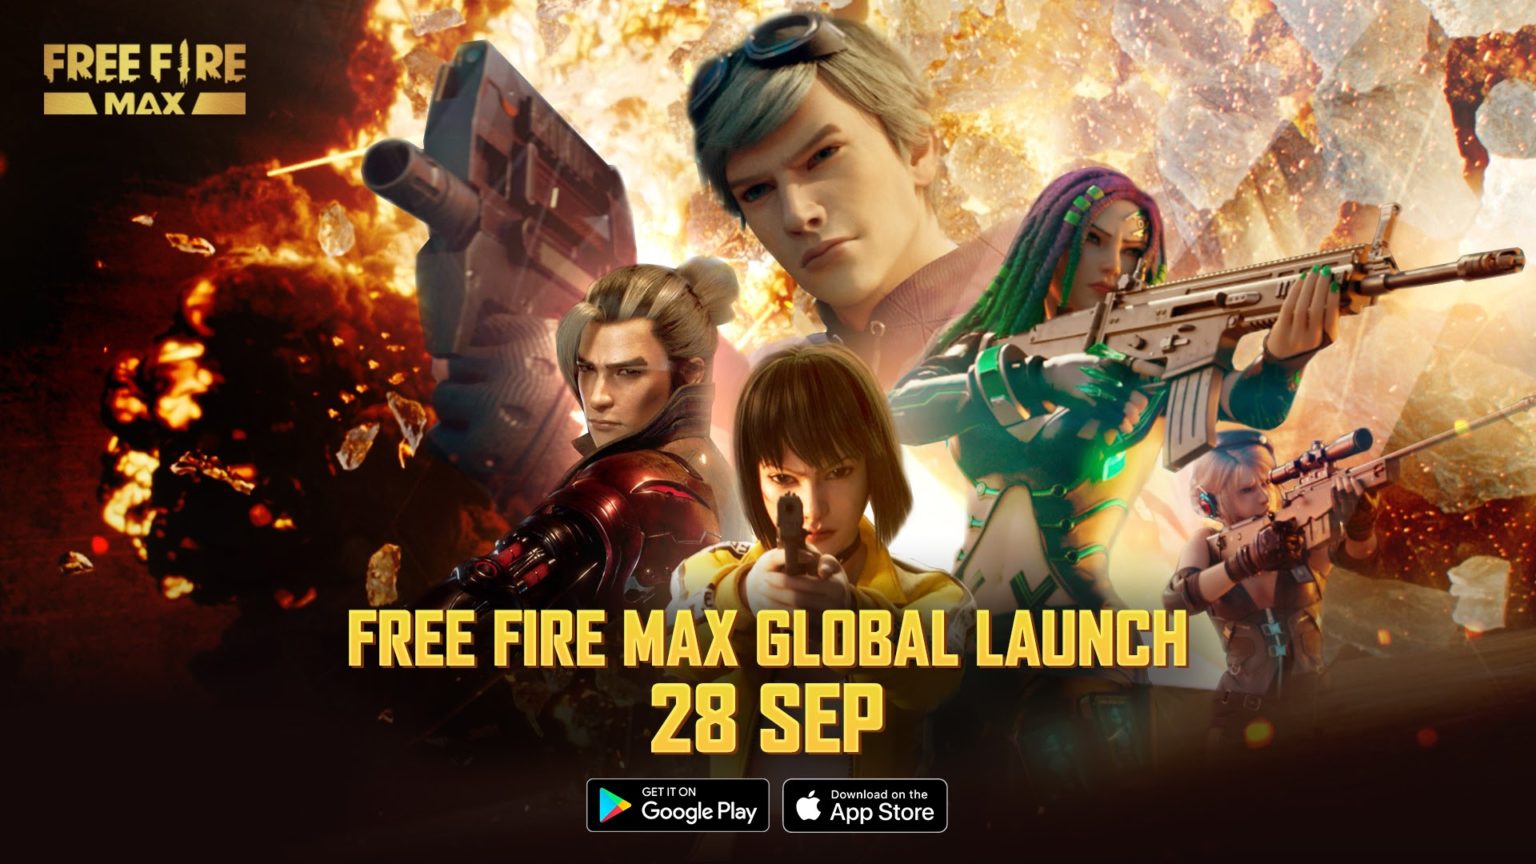 Free Fire Max erscheint am 28. September